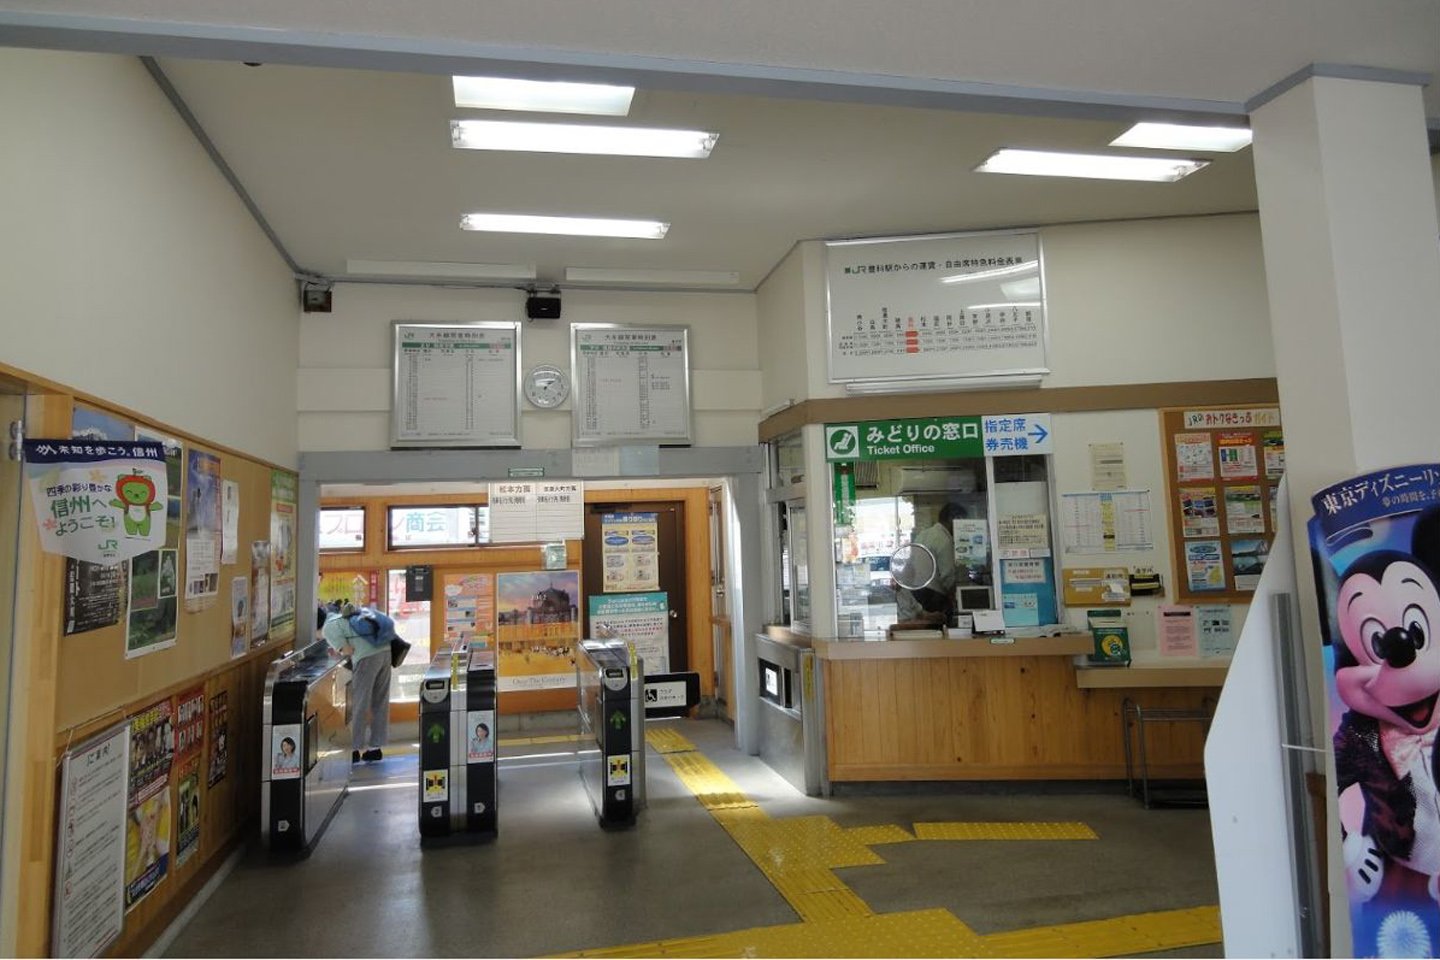 みどり の 駅 窓口 松本 松本駅のみどりの窓口で。